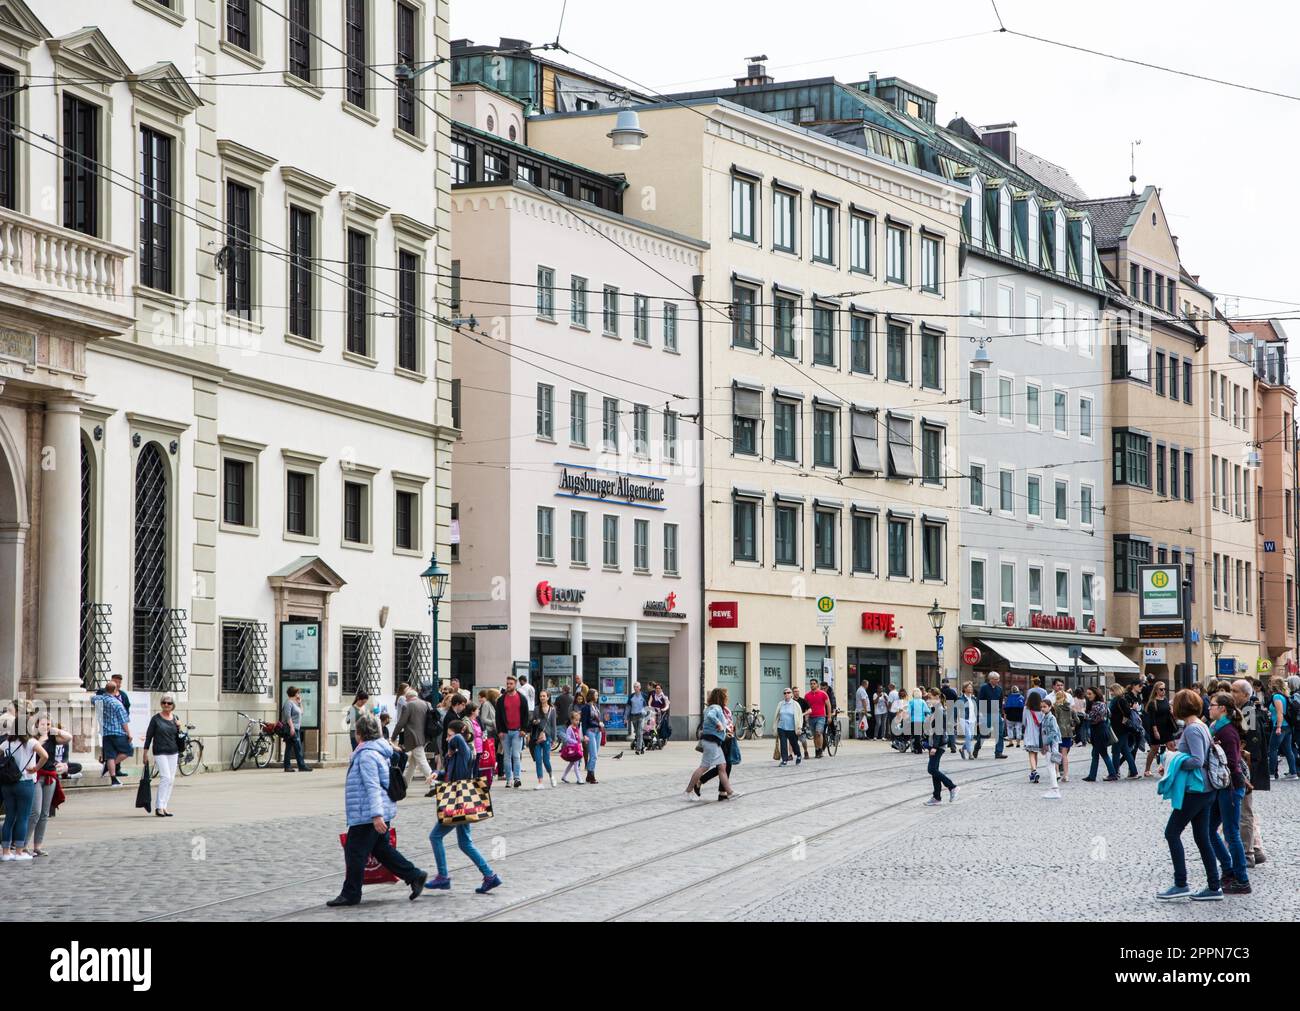 AUGSBURG, GERMANIA - 1 APRILE: Persone in una strada ad Augsburg, Germania il 1 aprile 2017. Augusta è una delle città più antiche della Germania. Foto scattata Foto Stock